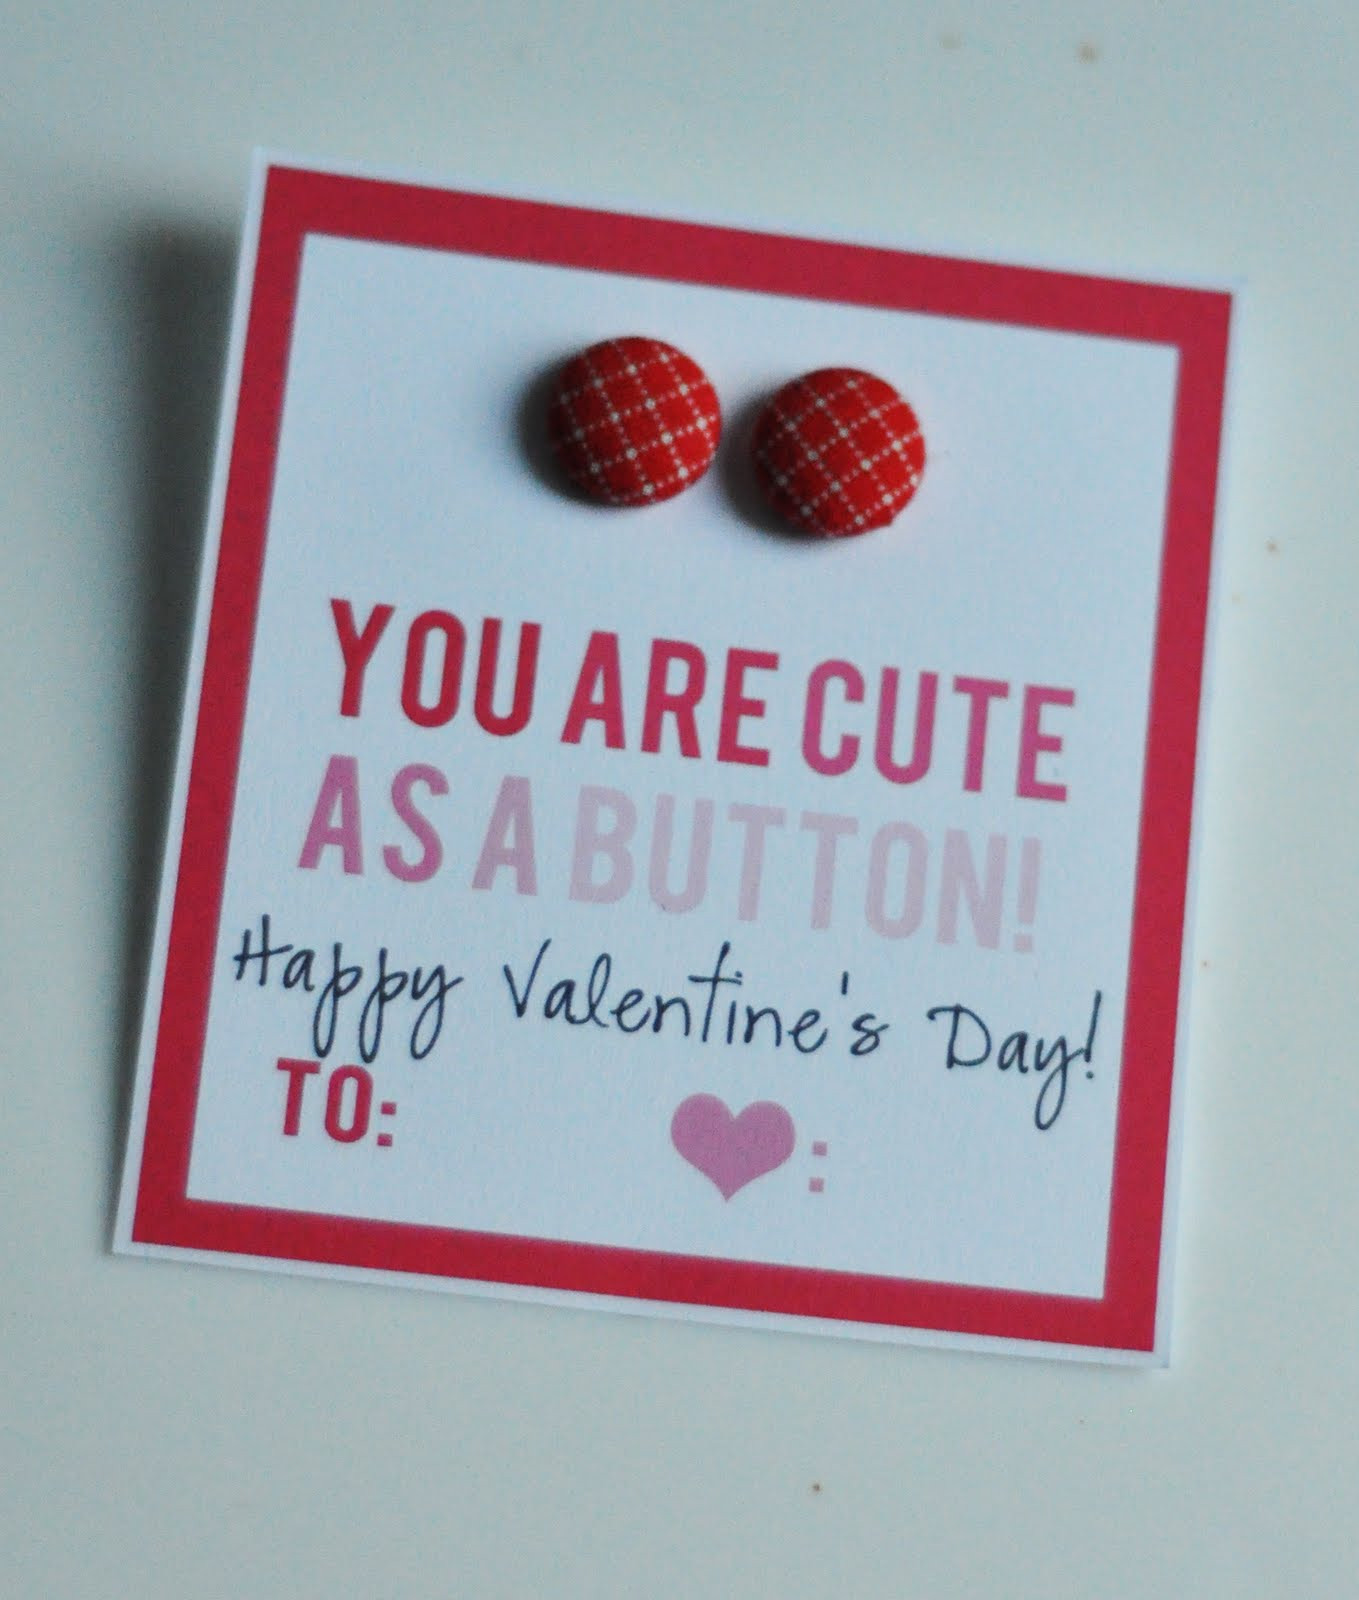 Valentines Day Gift Ideas Pinterest
 Valentines Day Gift Ideas